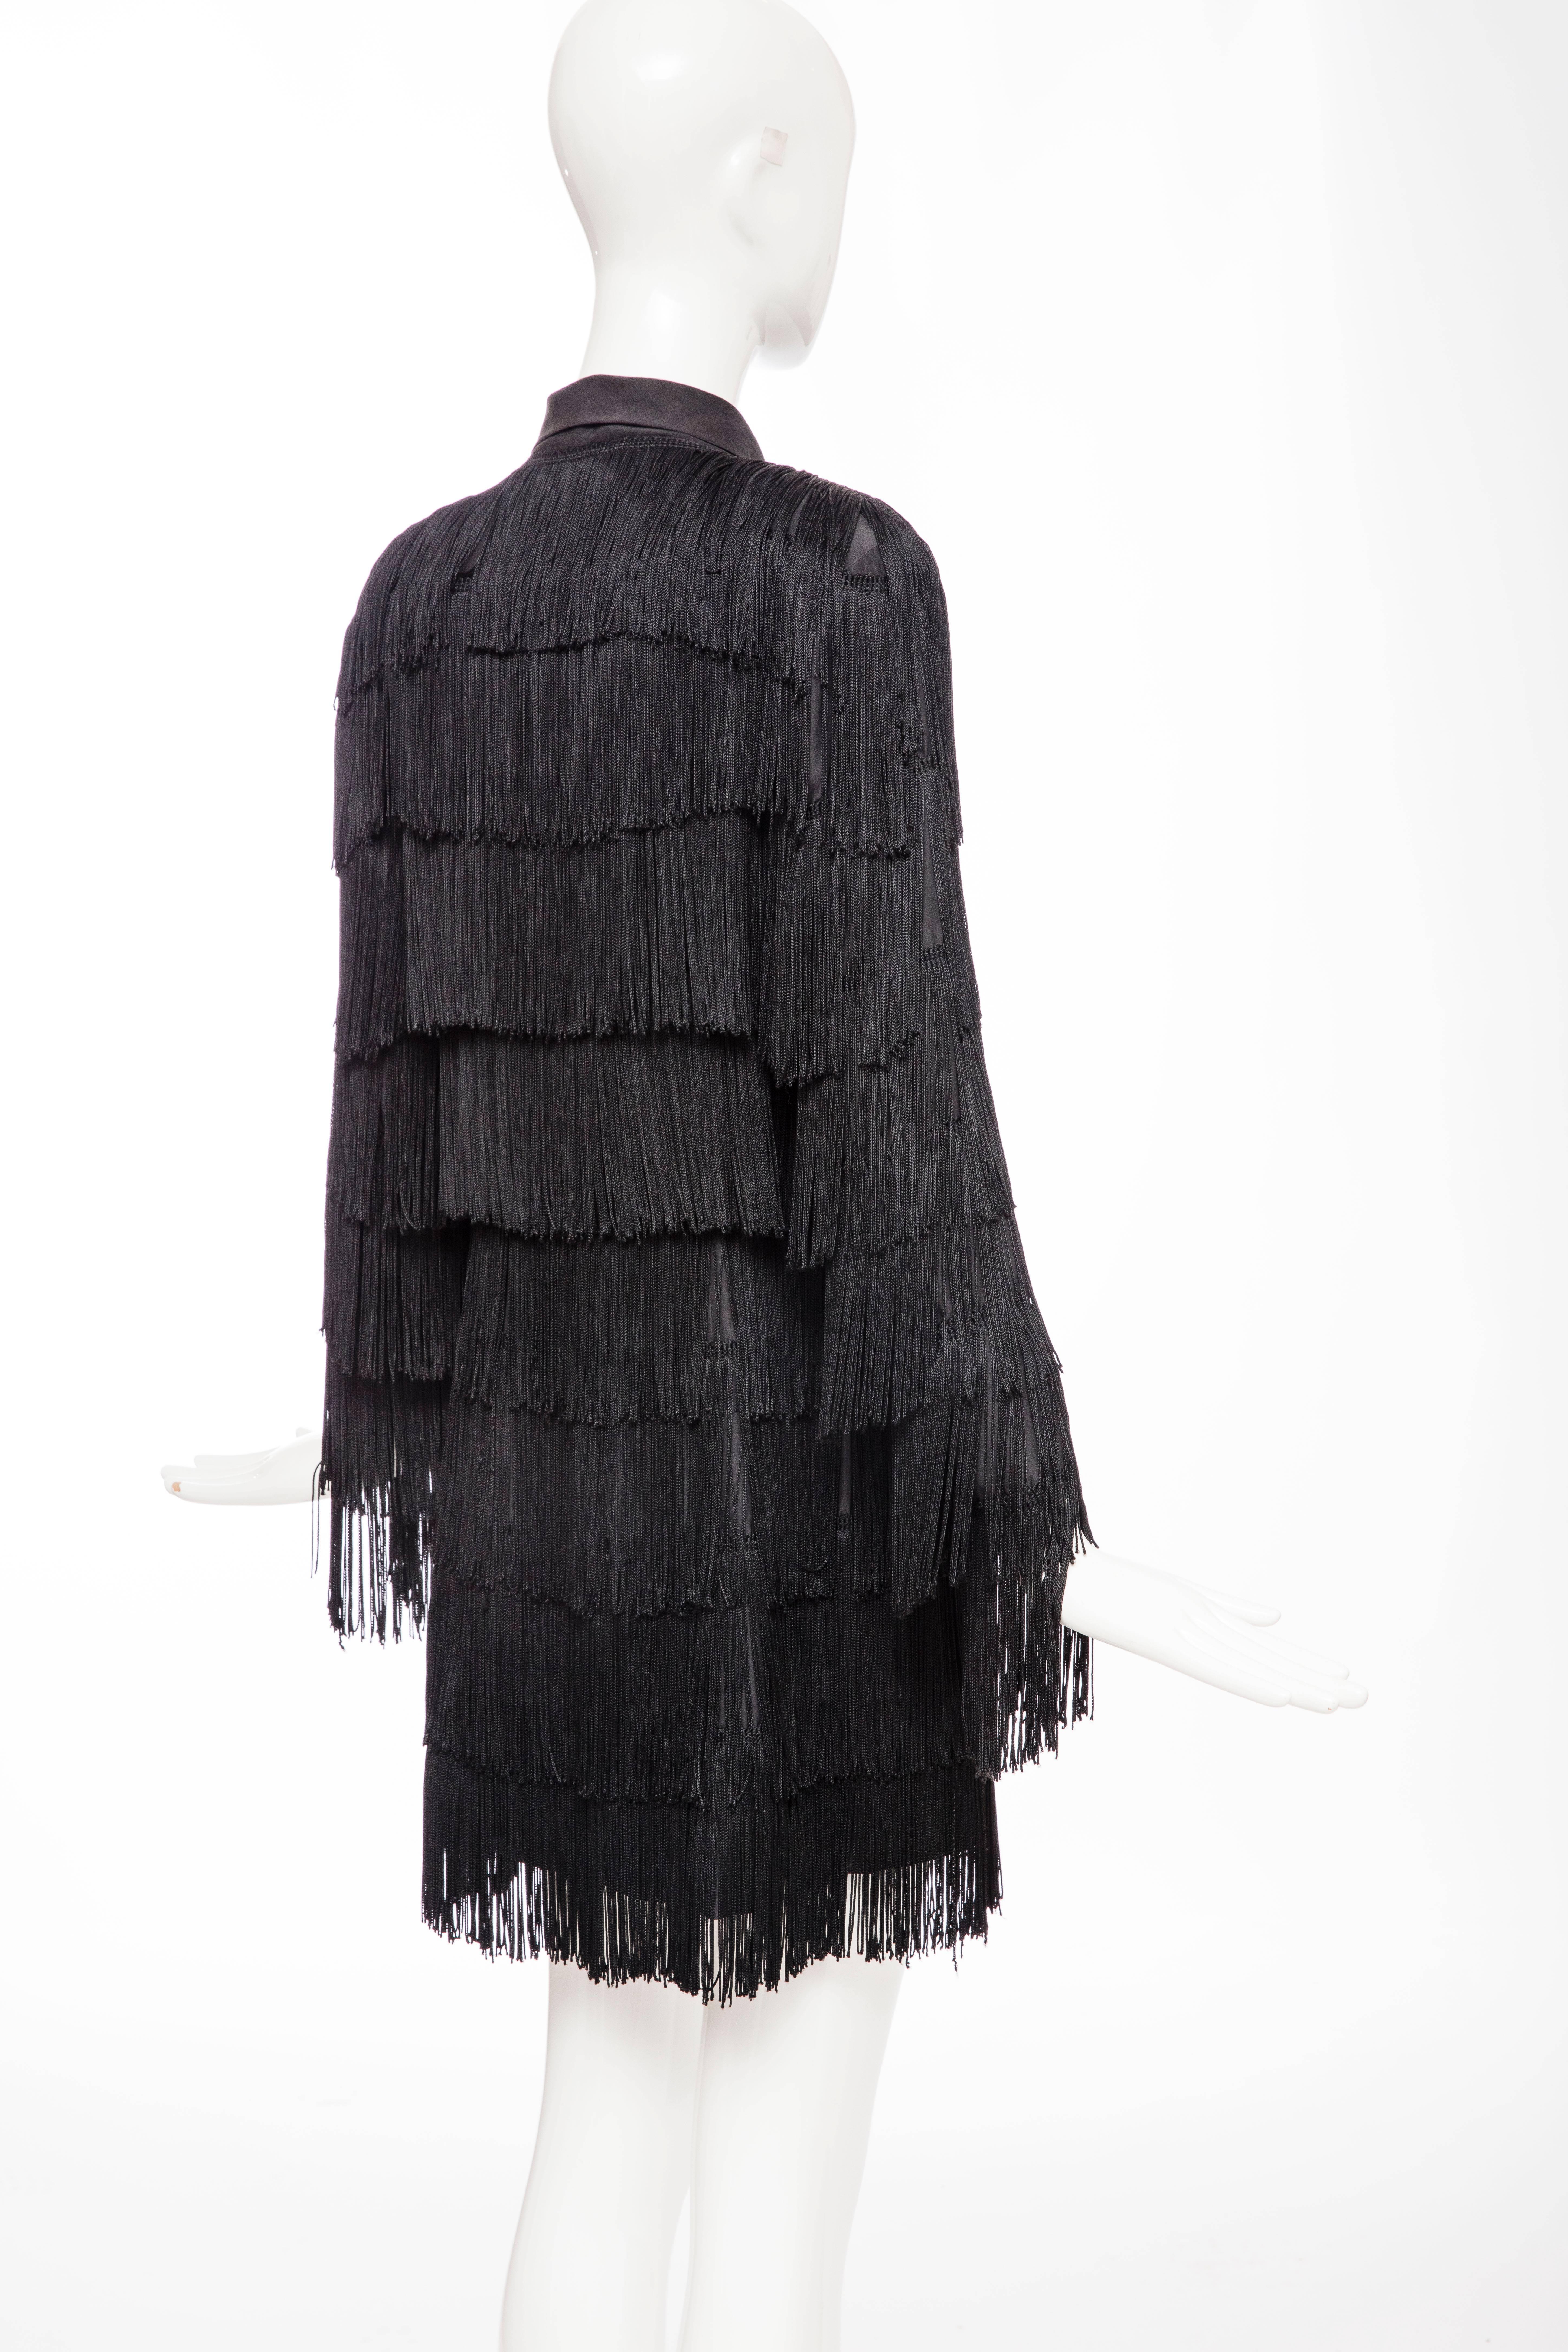 Norma Kamali OMO Black Fringe Long Jacket, Circa 1980's 3